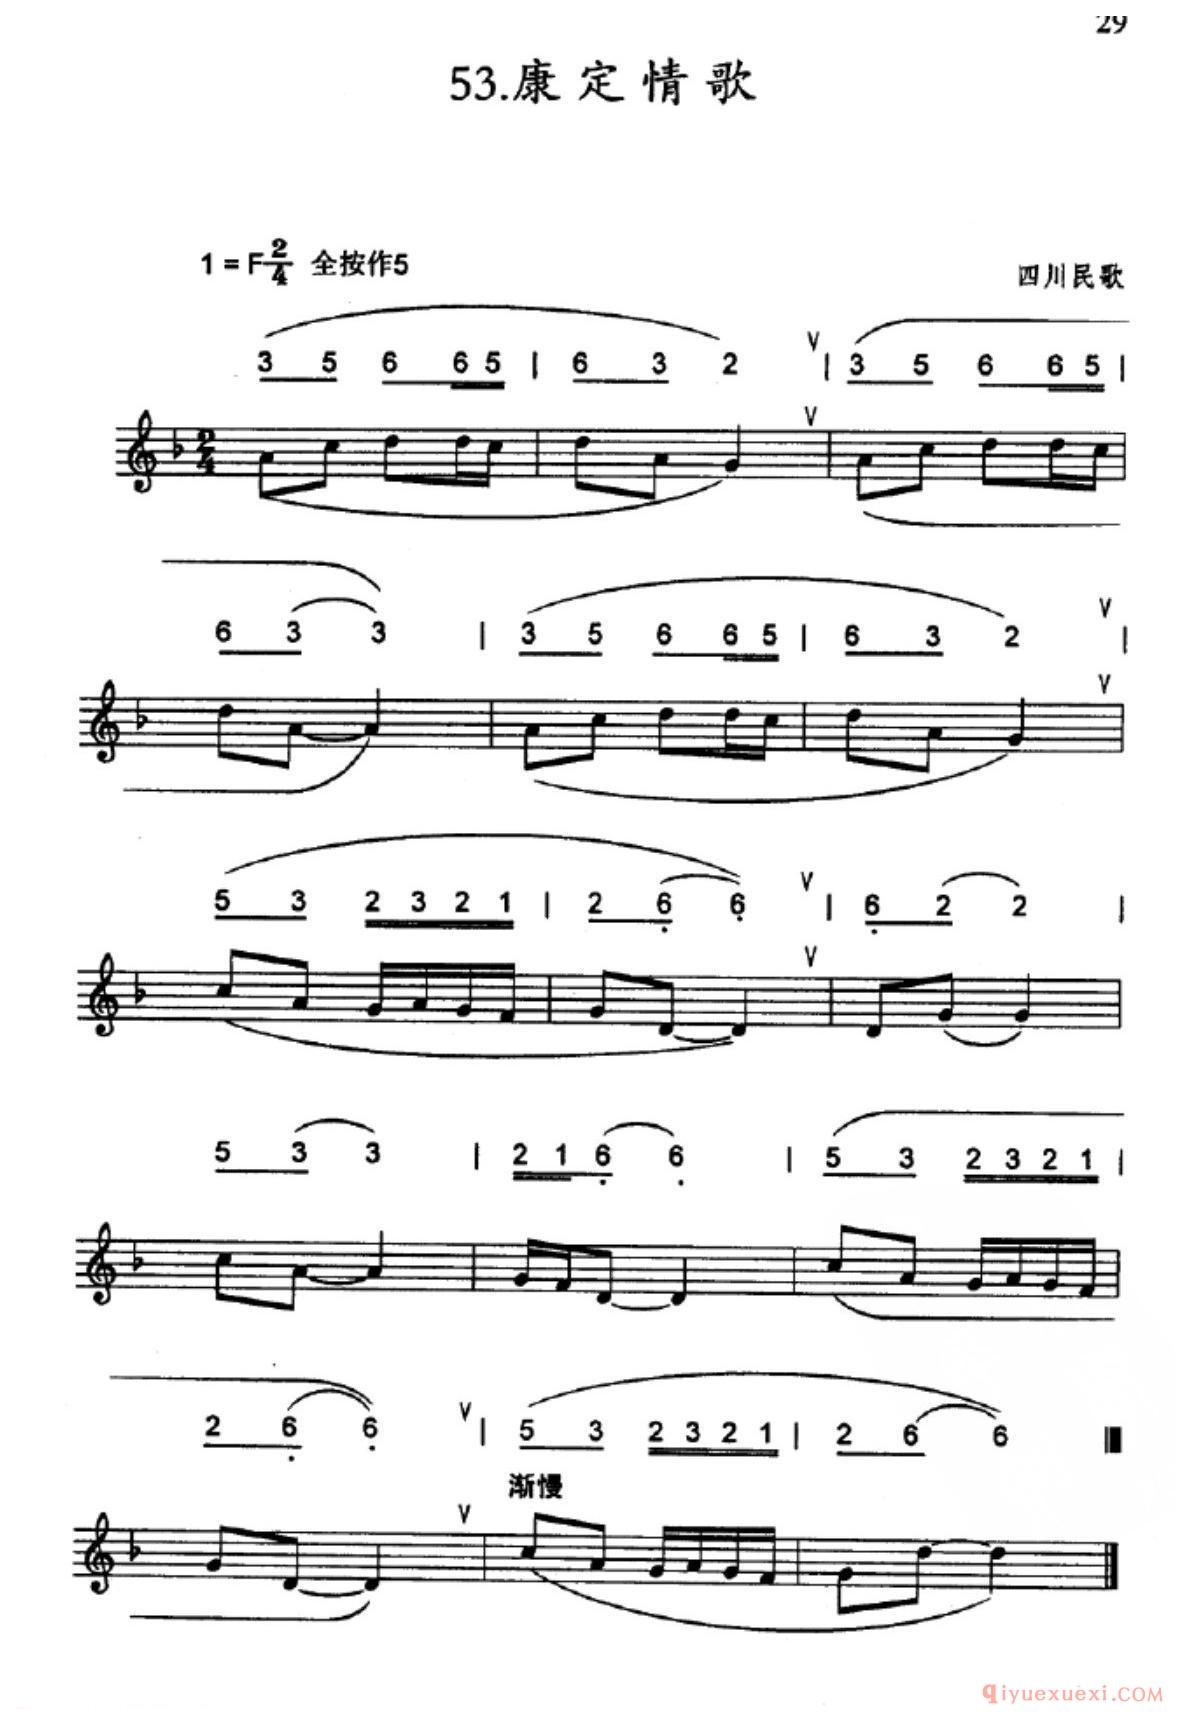 竖笛练习曲_康定情歌_五线谱与简谱对照